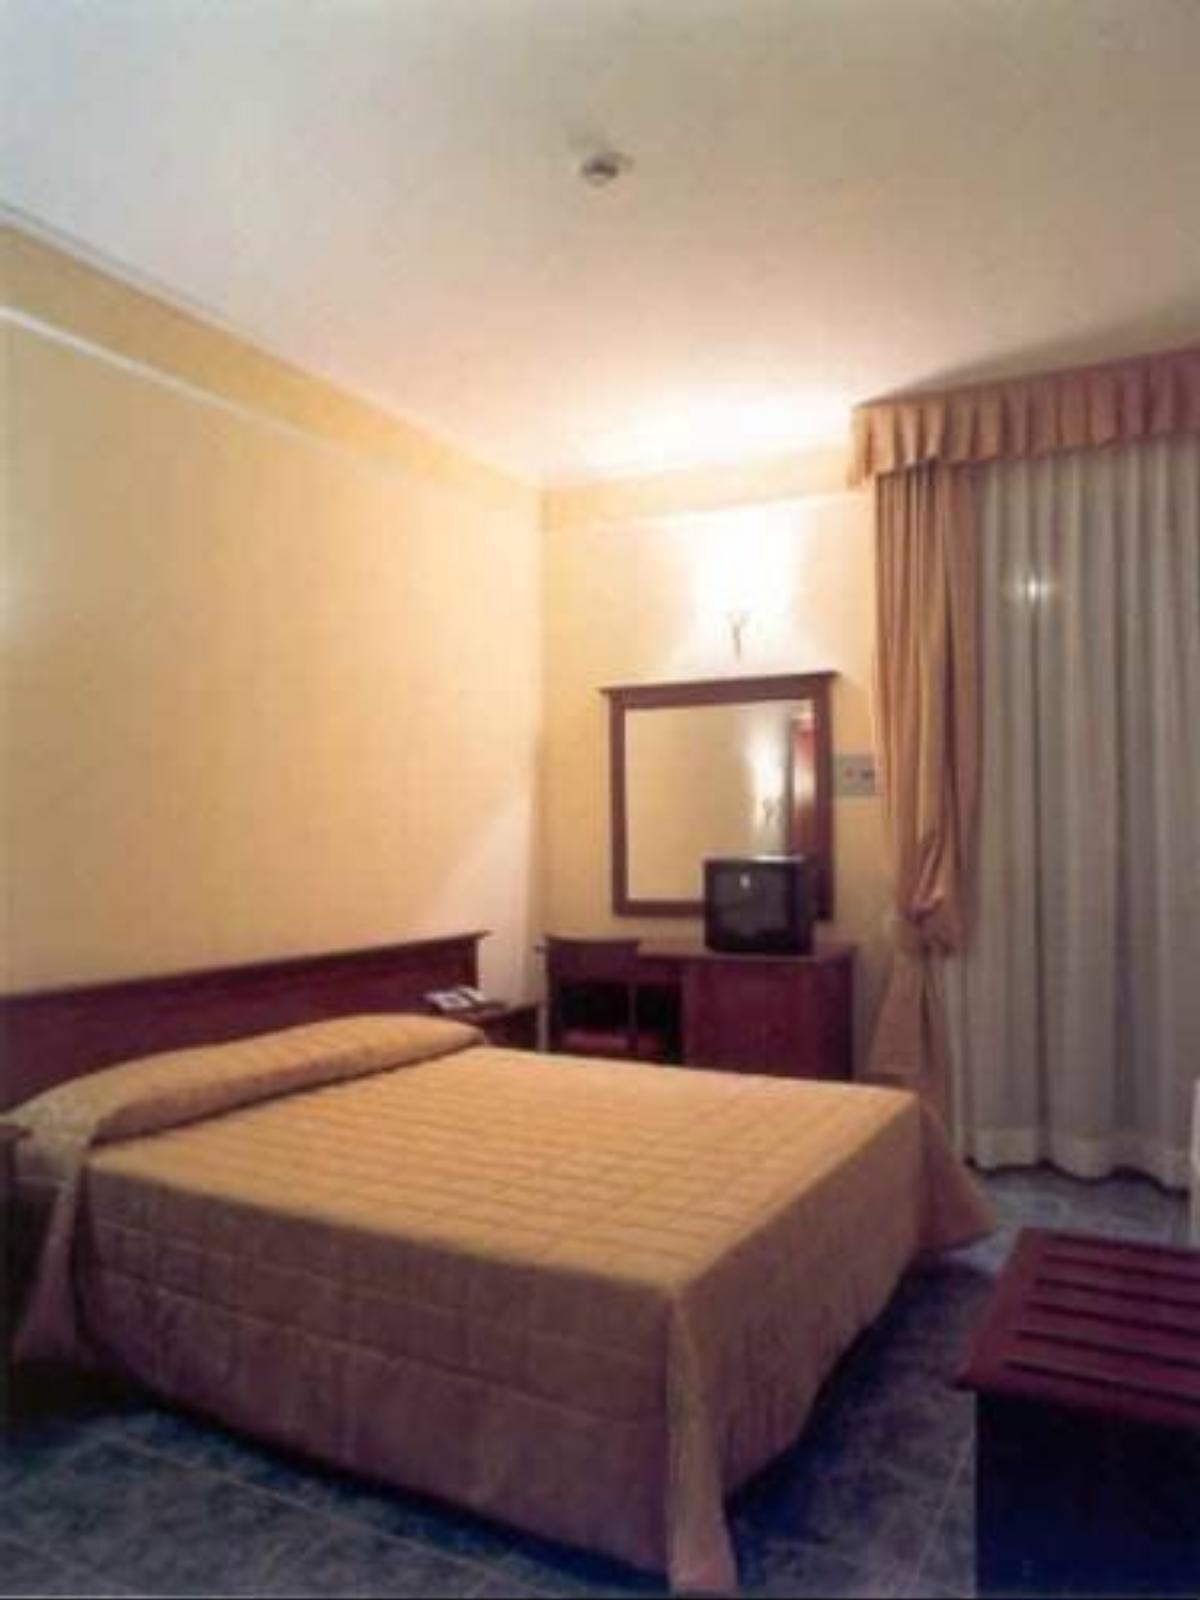 Hotel Impero Hotel Brescia Italy